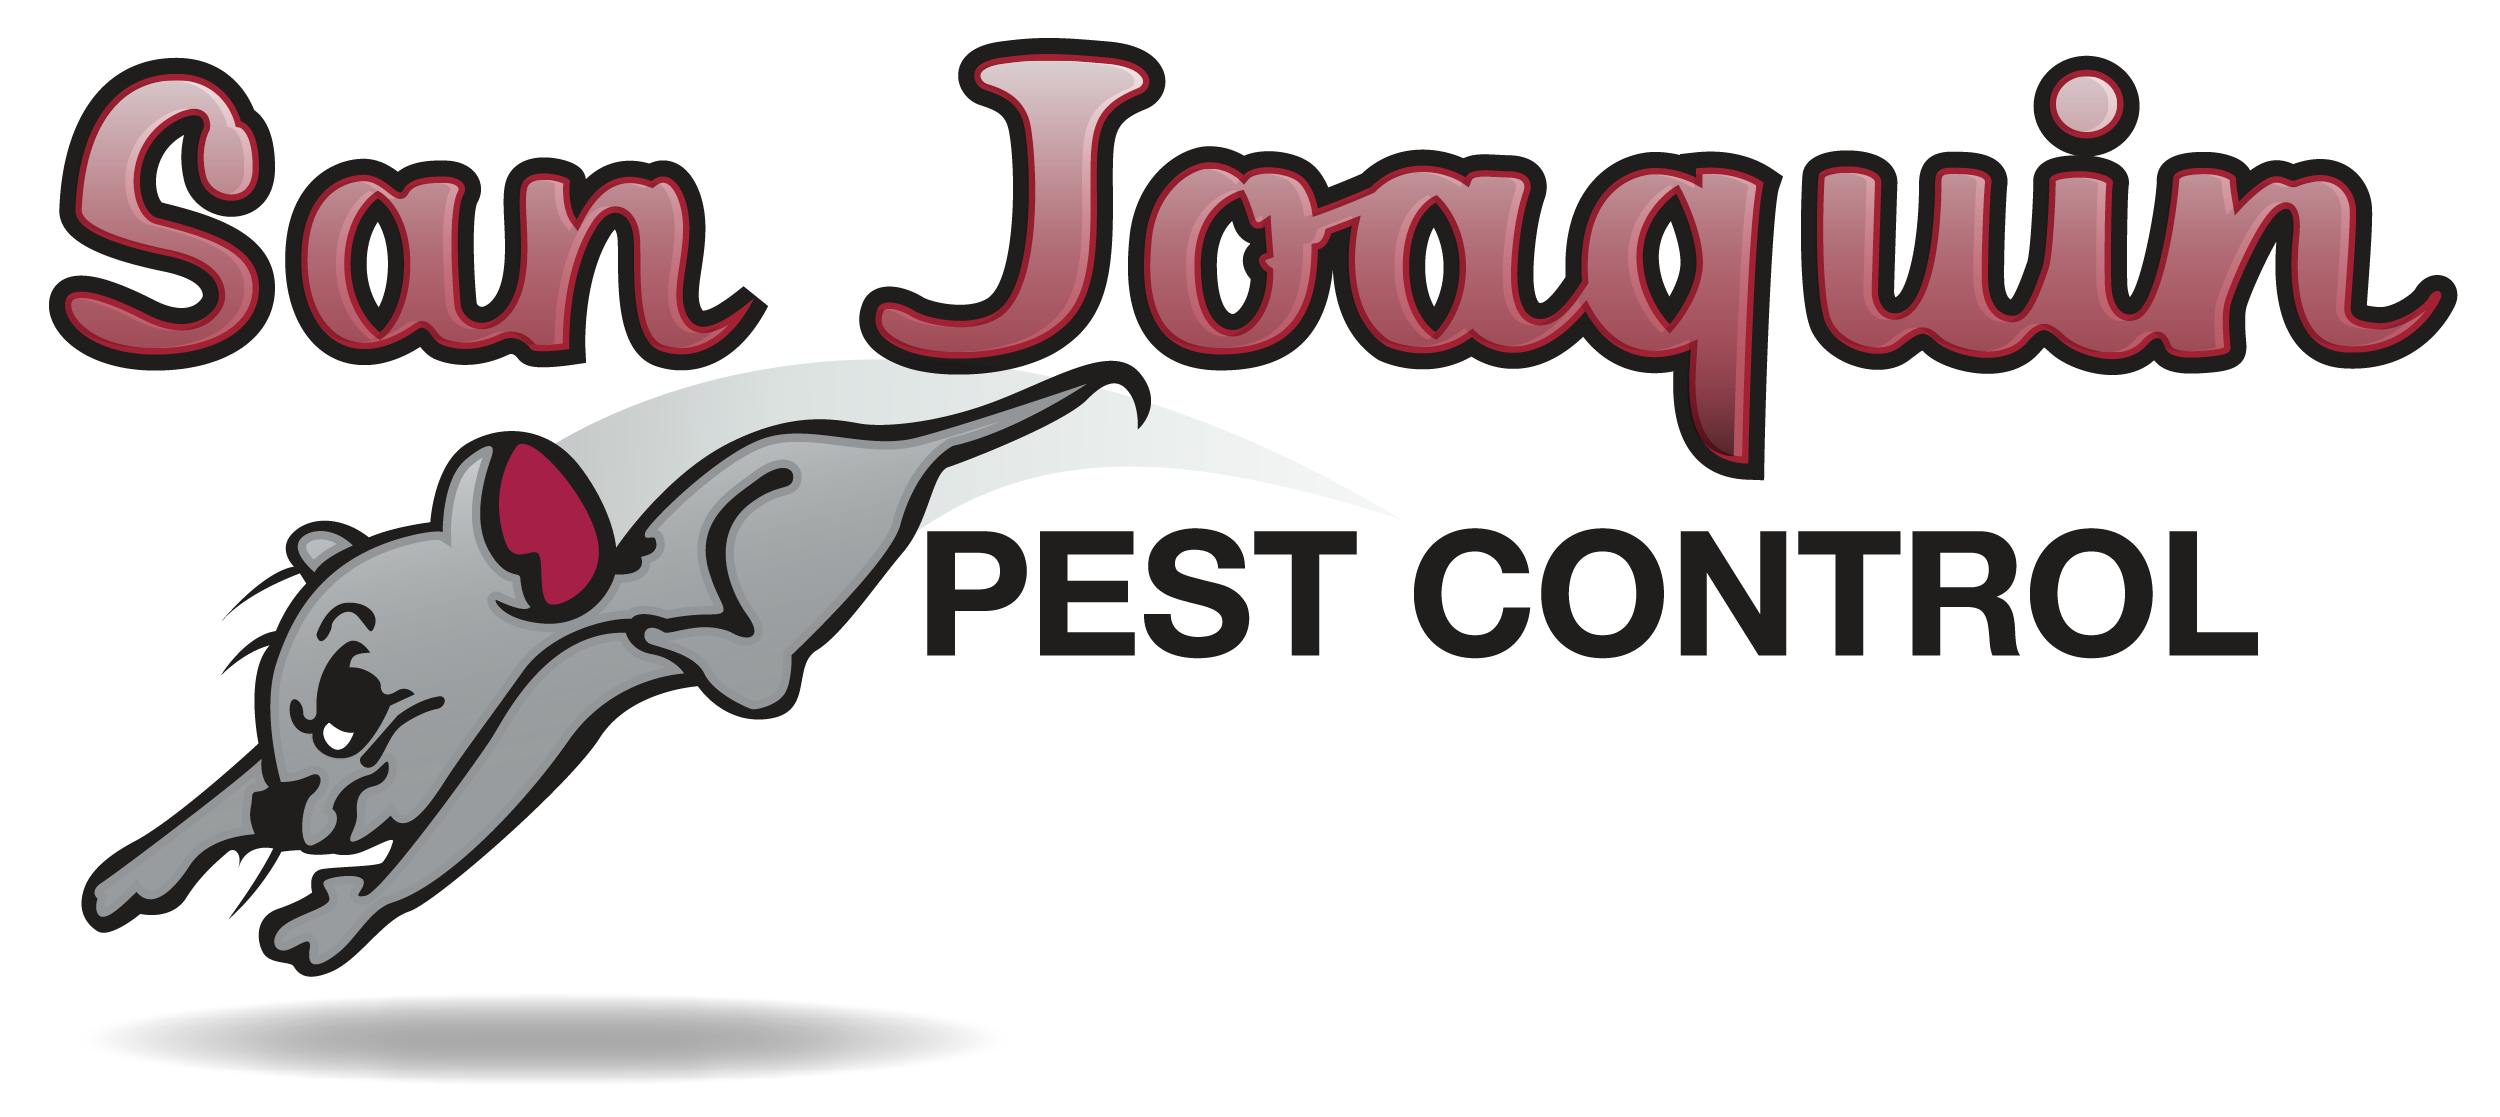 San Joaquin Pest Control